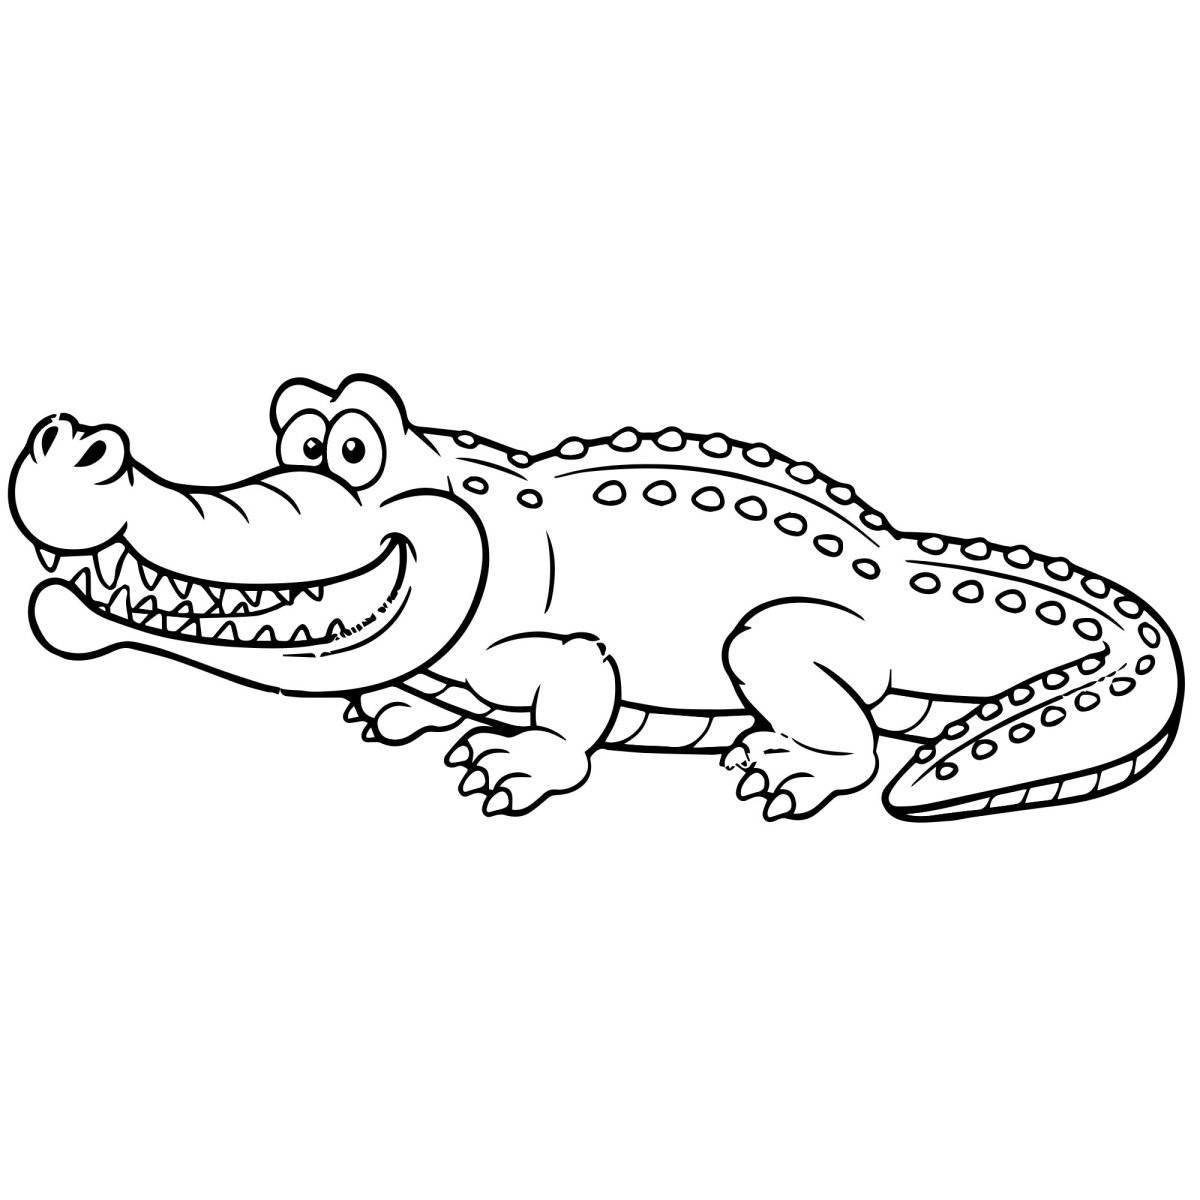 Творческая раскраска крокодила для дошкольников